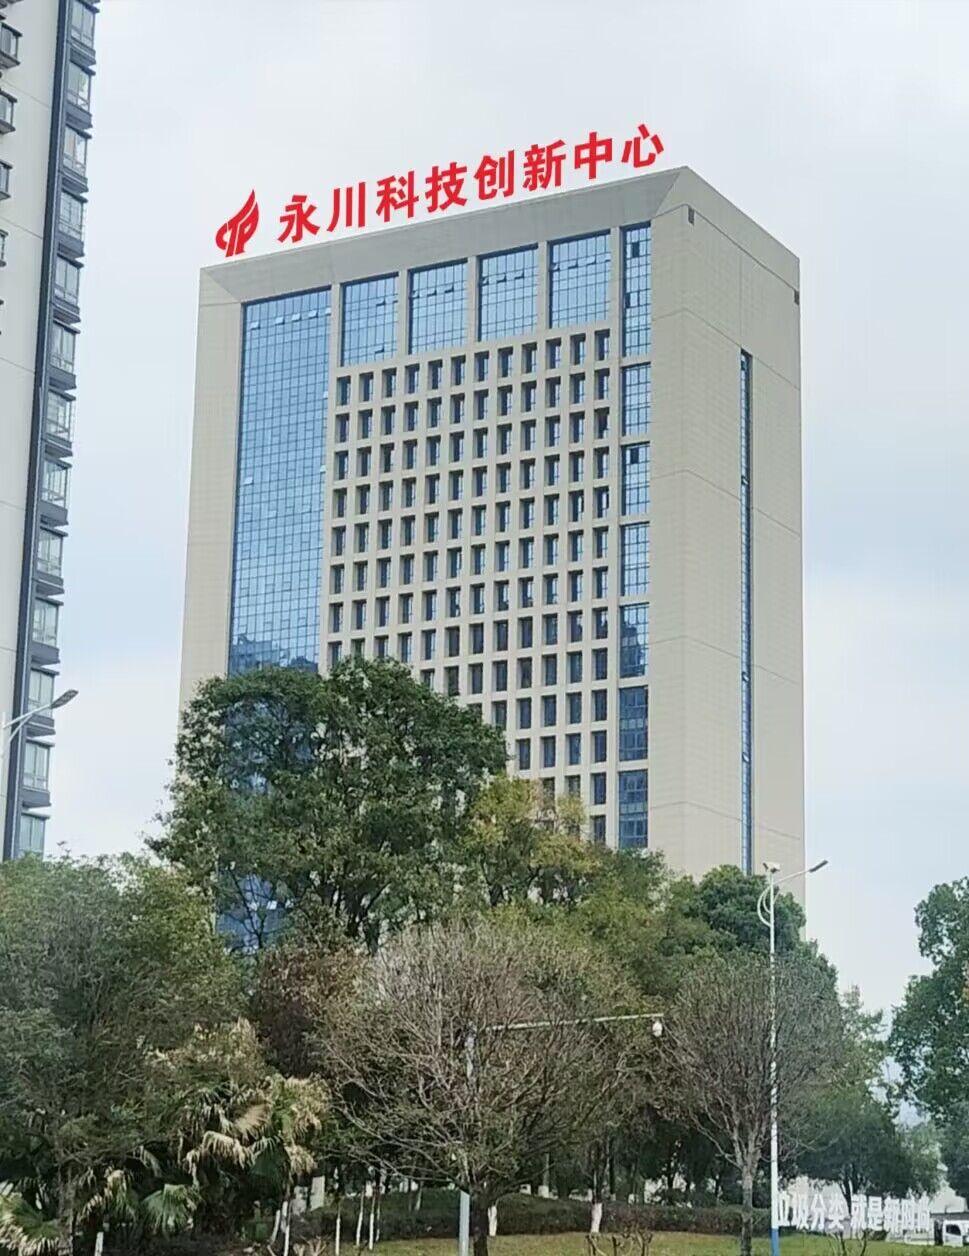 重庆文理学院新建的“科技创新中心”（效果图）。受访单位供图